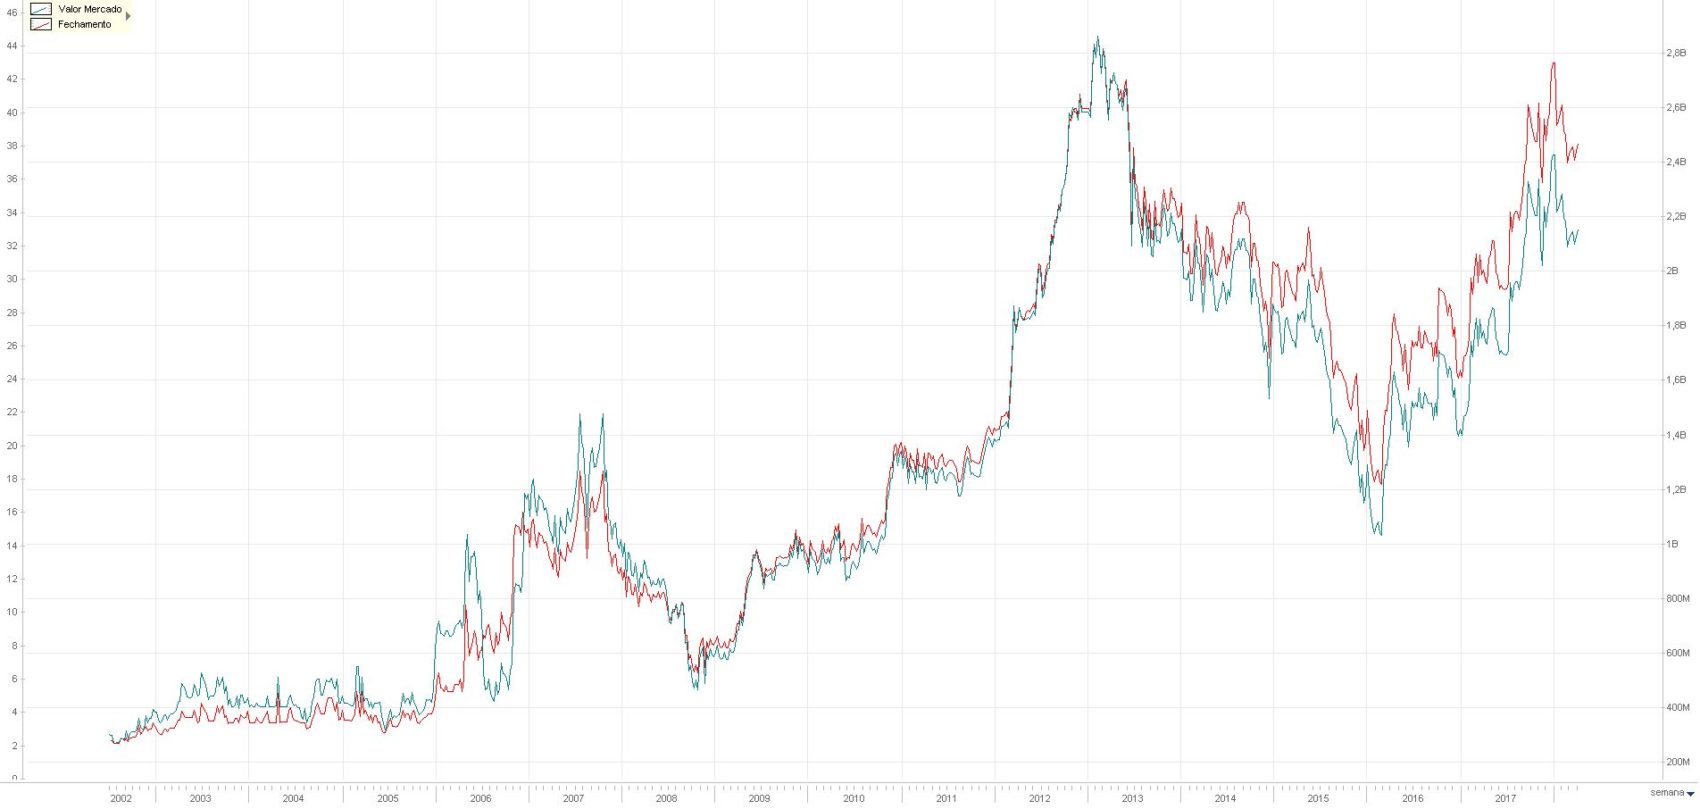 Valor de Mercado (azul) e Cotacao (vermelho) da Sao carlos - Economatica